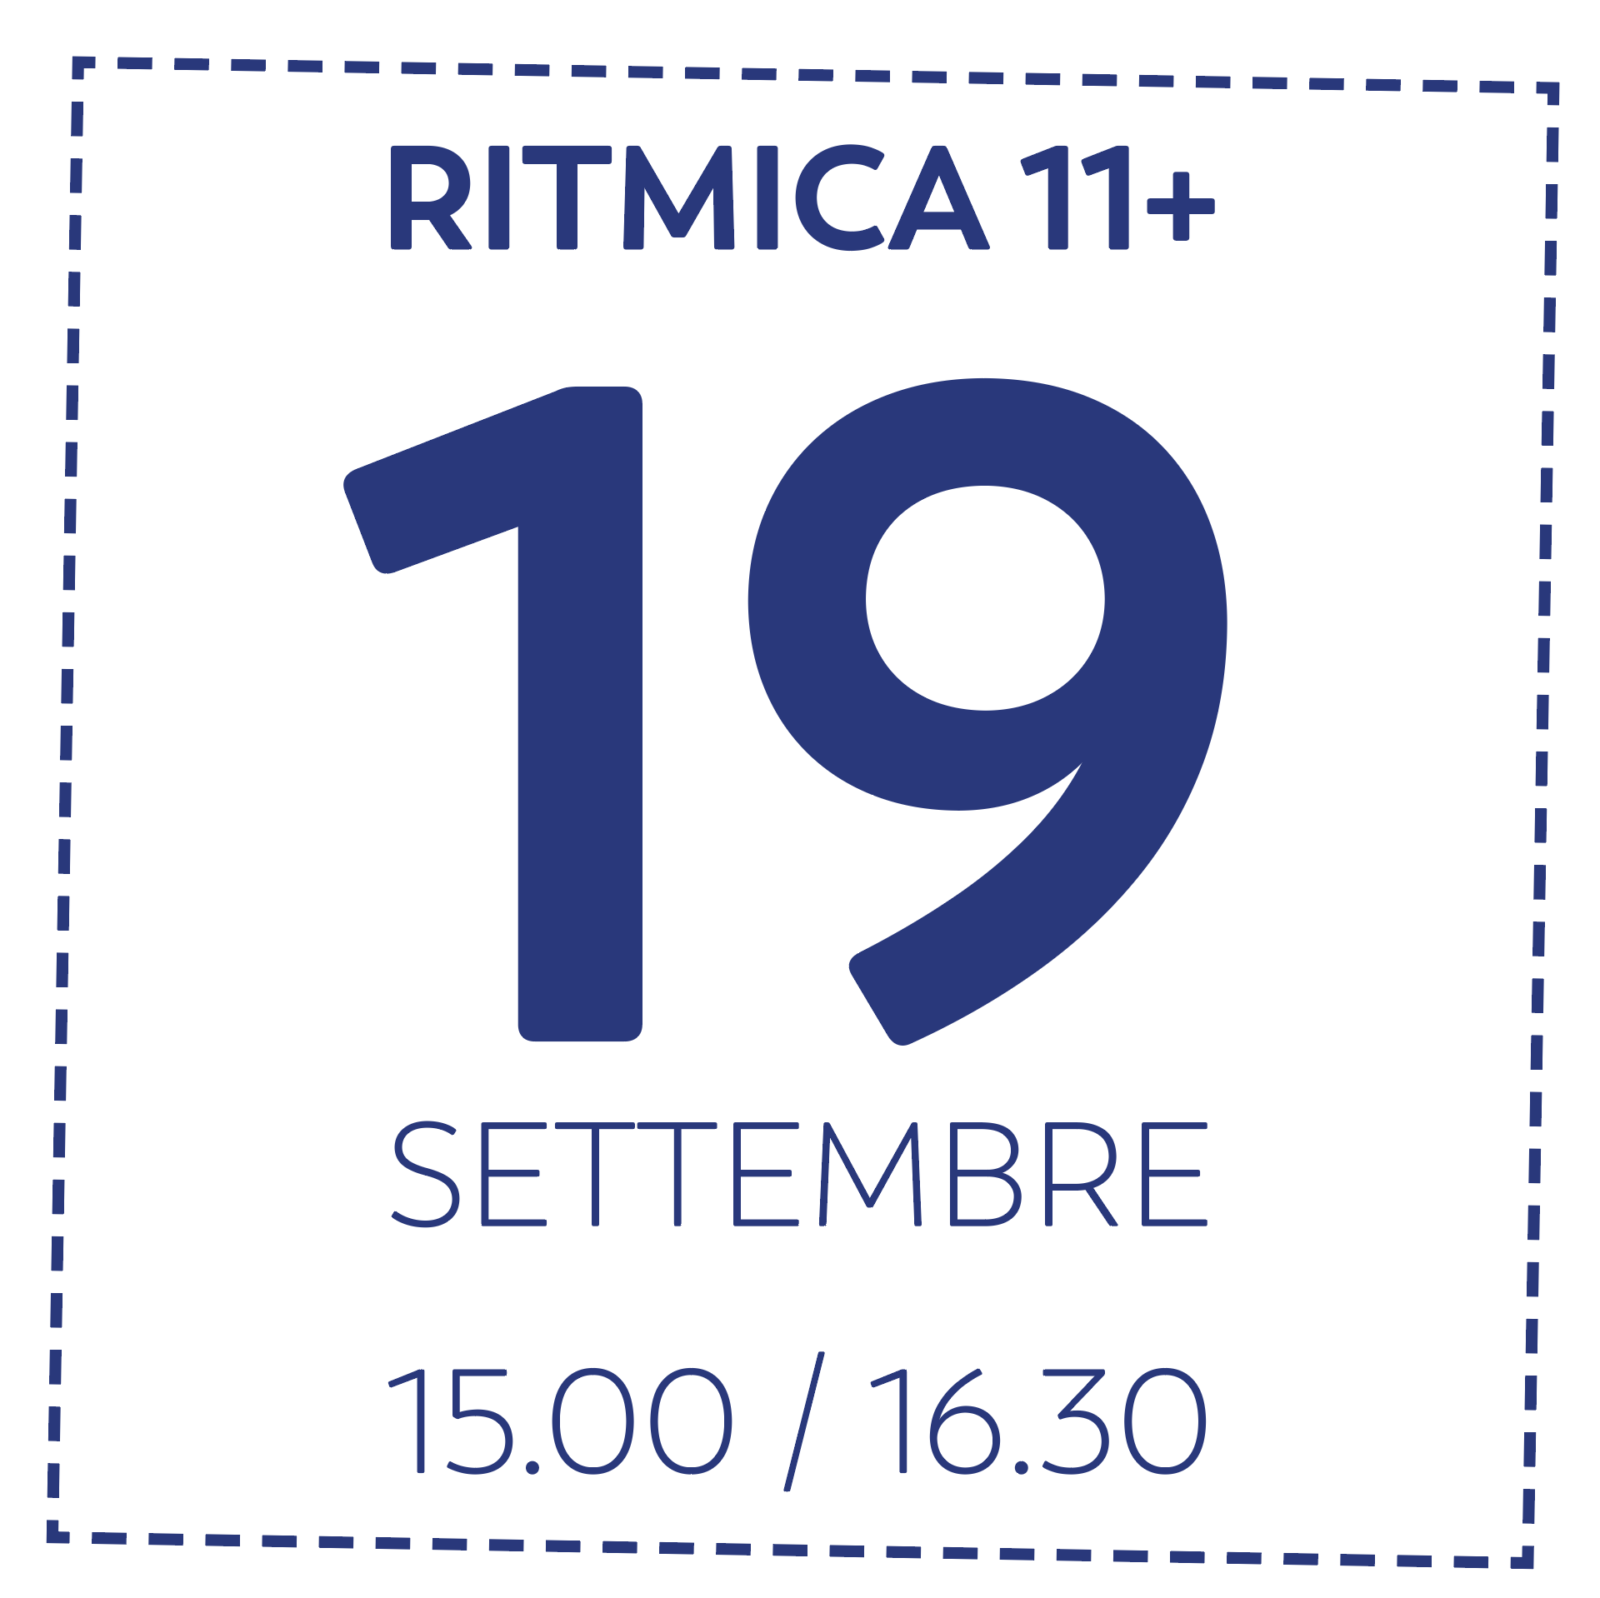 OD RITMICA 11+ - 19/9